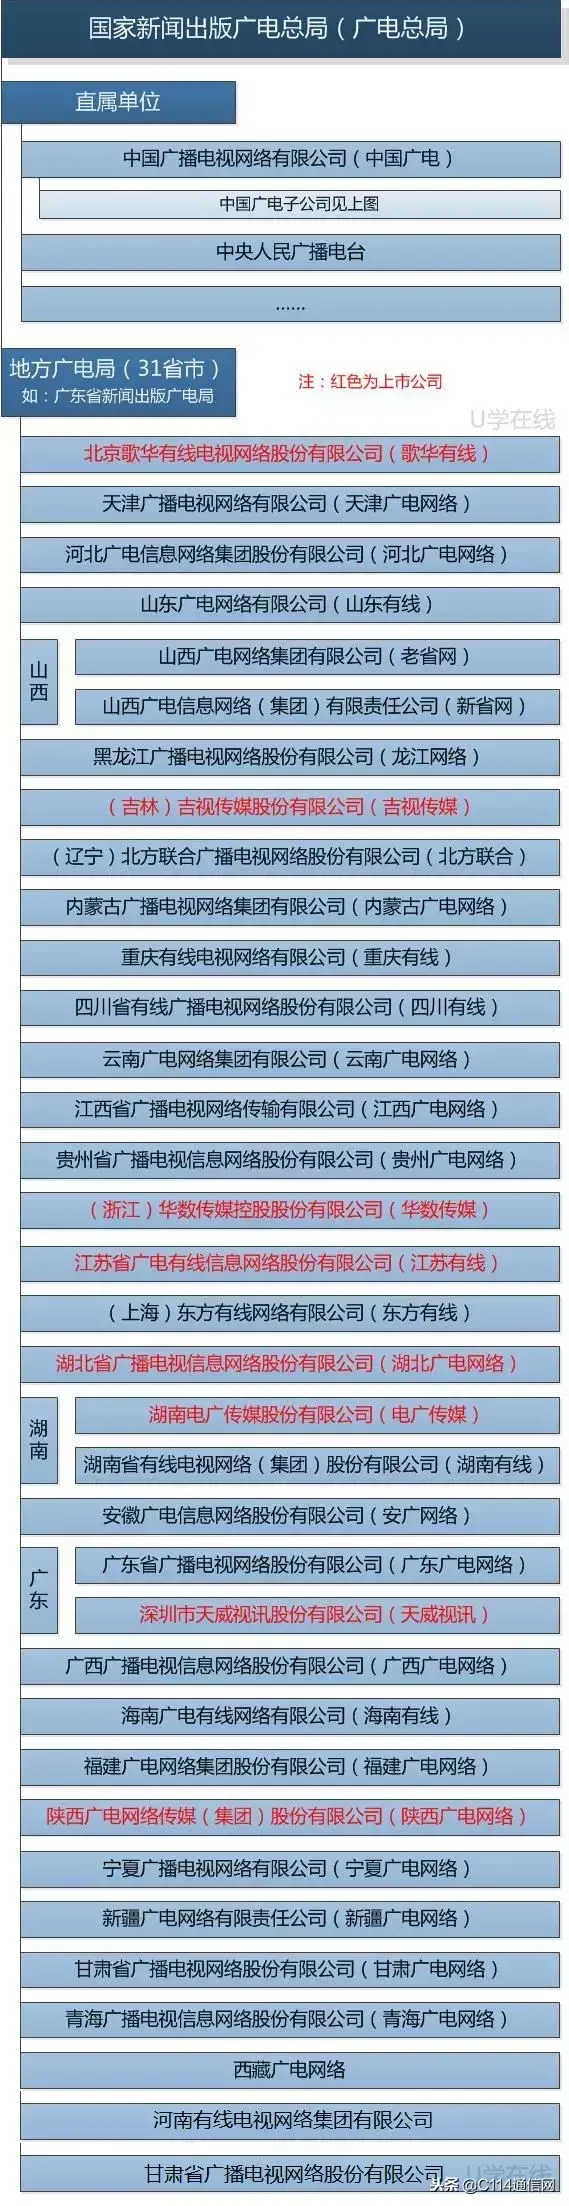 中国广电总公司_广电公司中国排名第几_中国广电公司